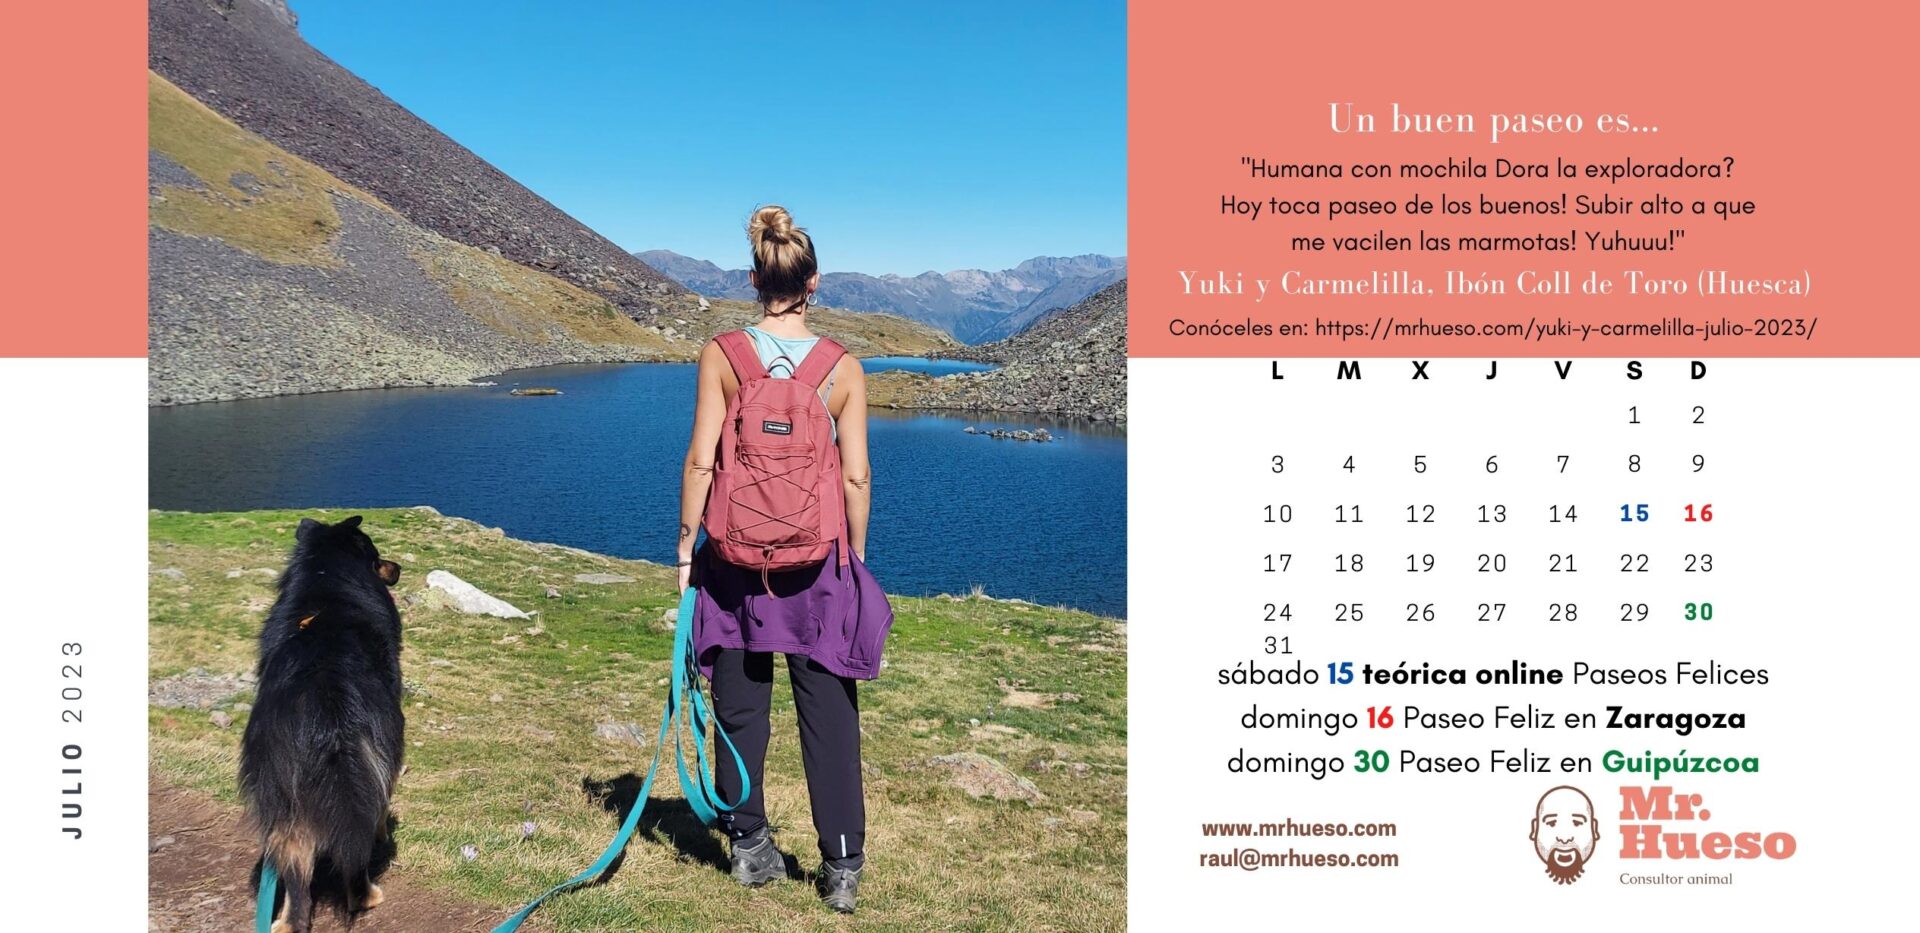 Yuki y Carmelilla en un ibón en Los Pirineos, junto al calendario de julio 2023